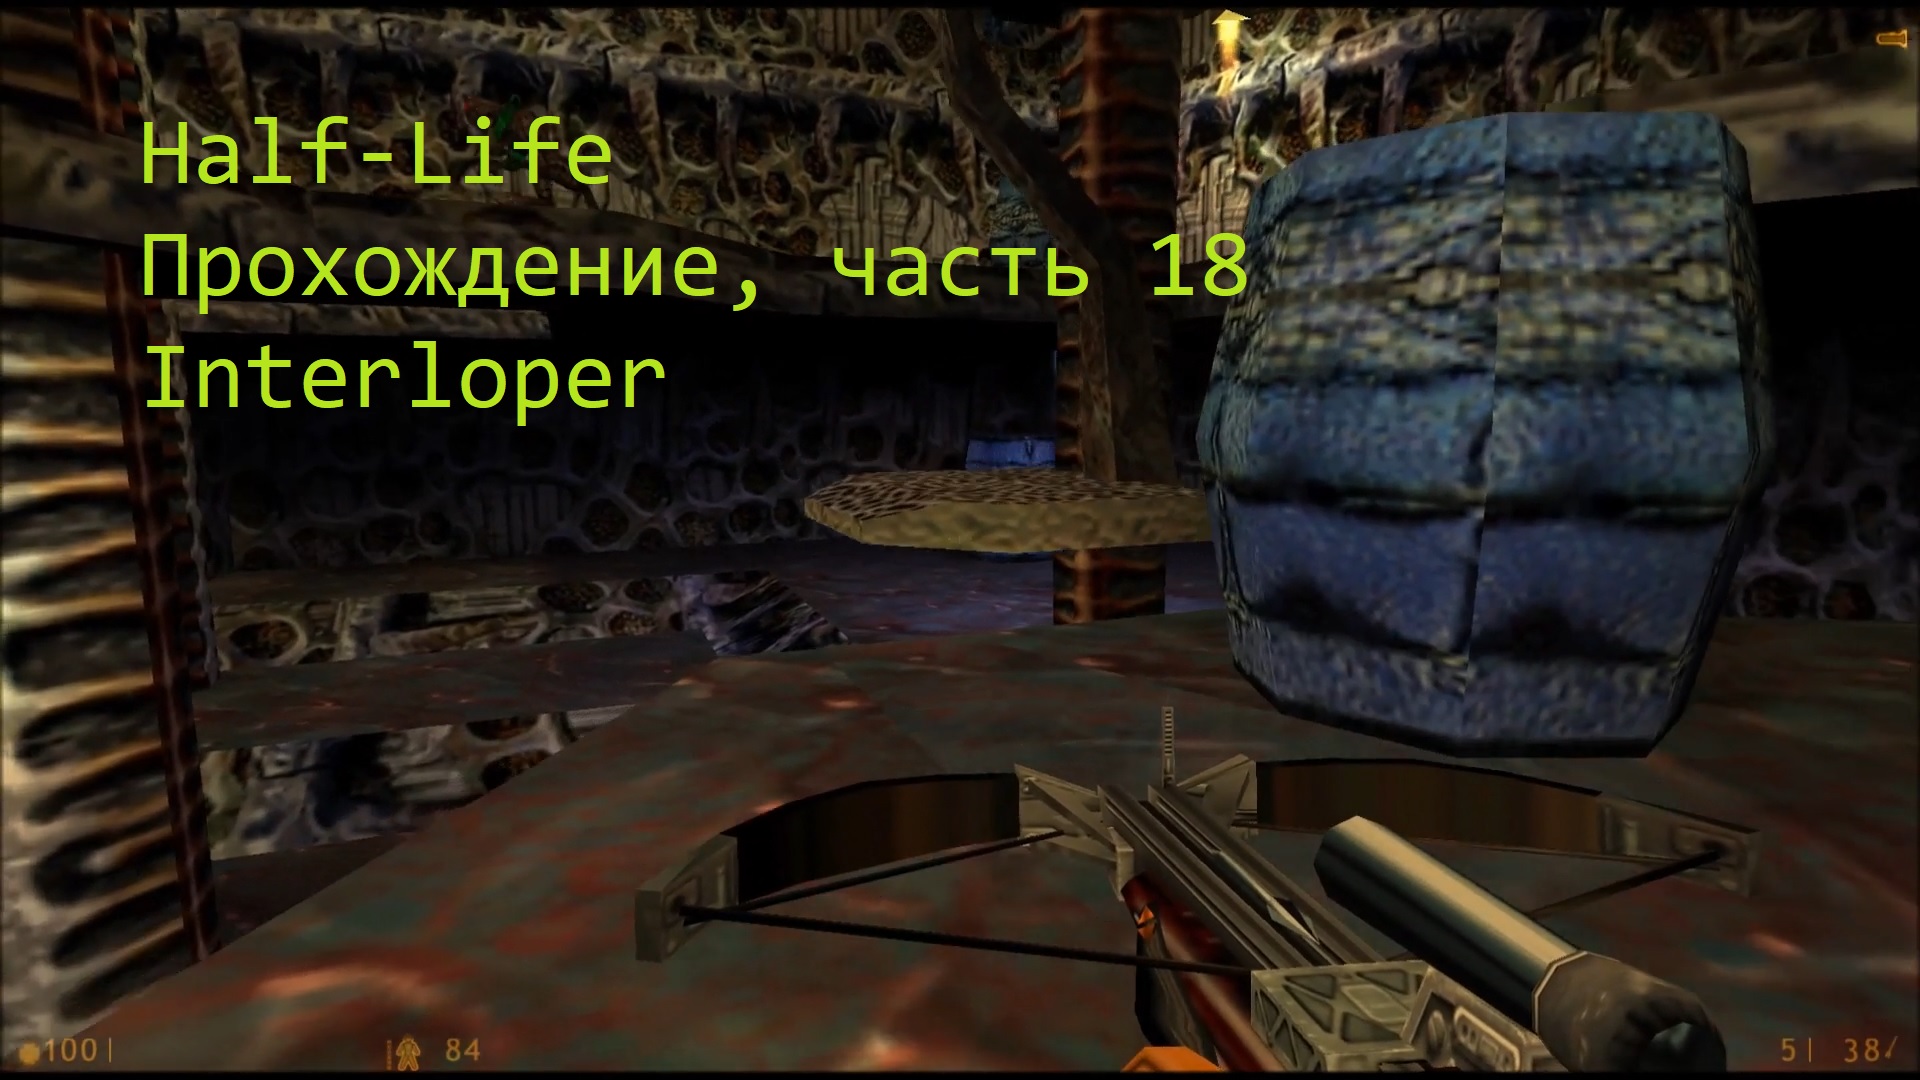 Half-Life, Прохождение, часть 18 - Interloper